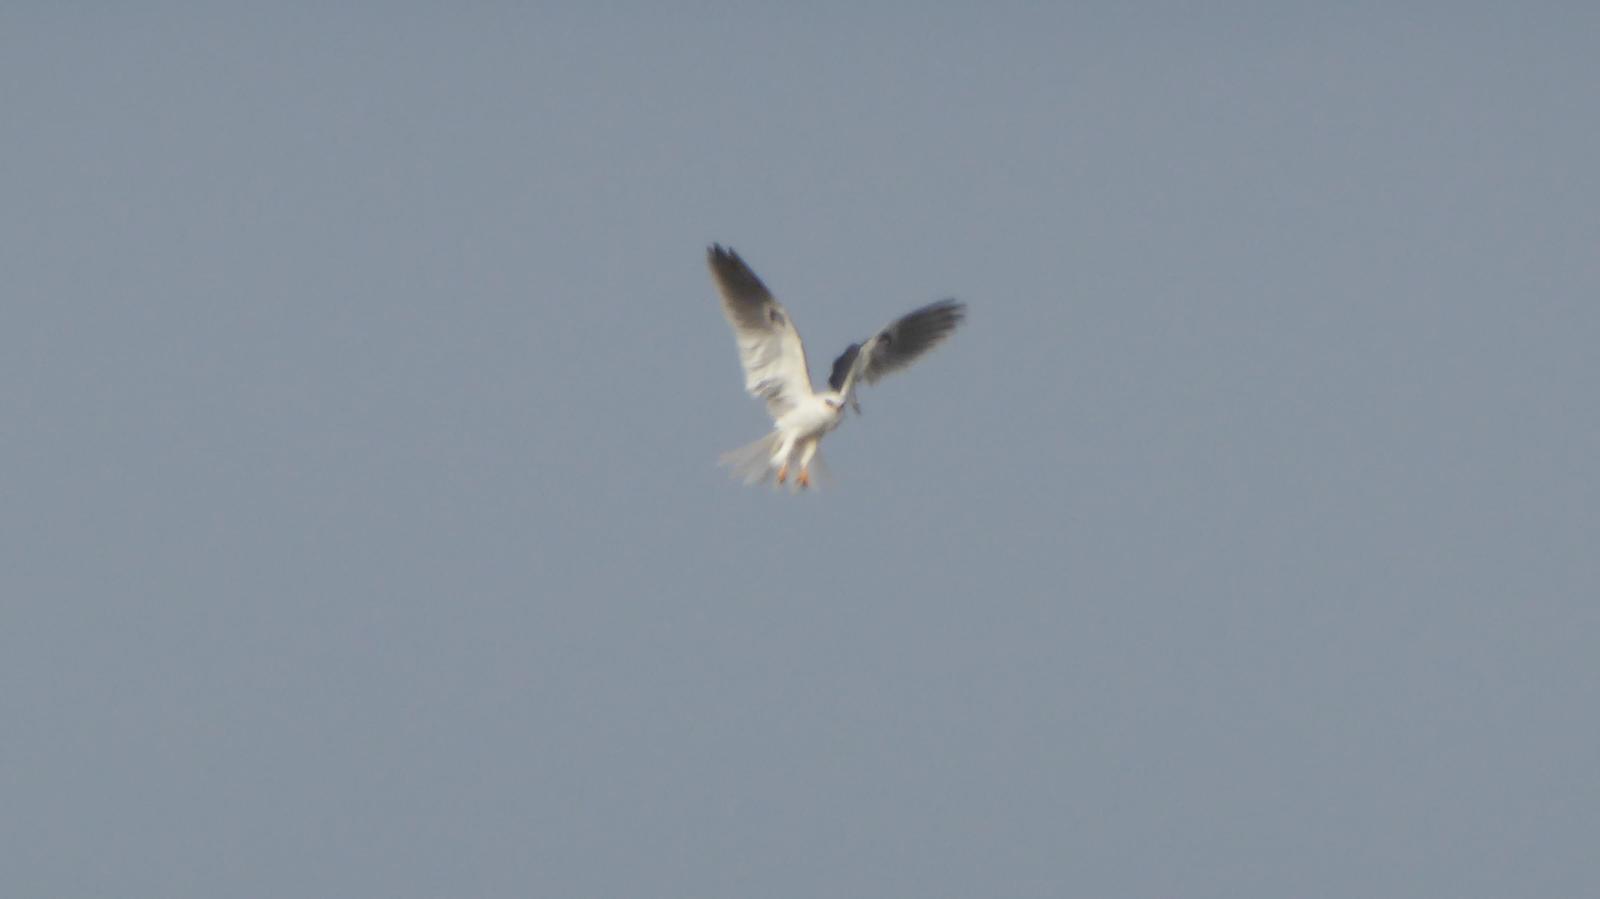 White-tailed Kite Photo by Daliel Leite